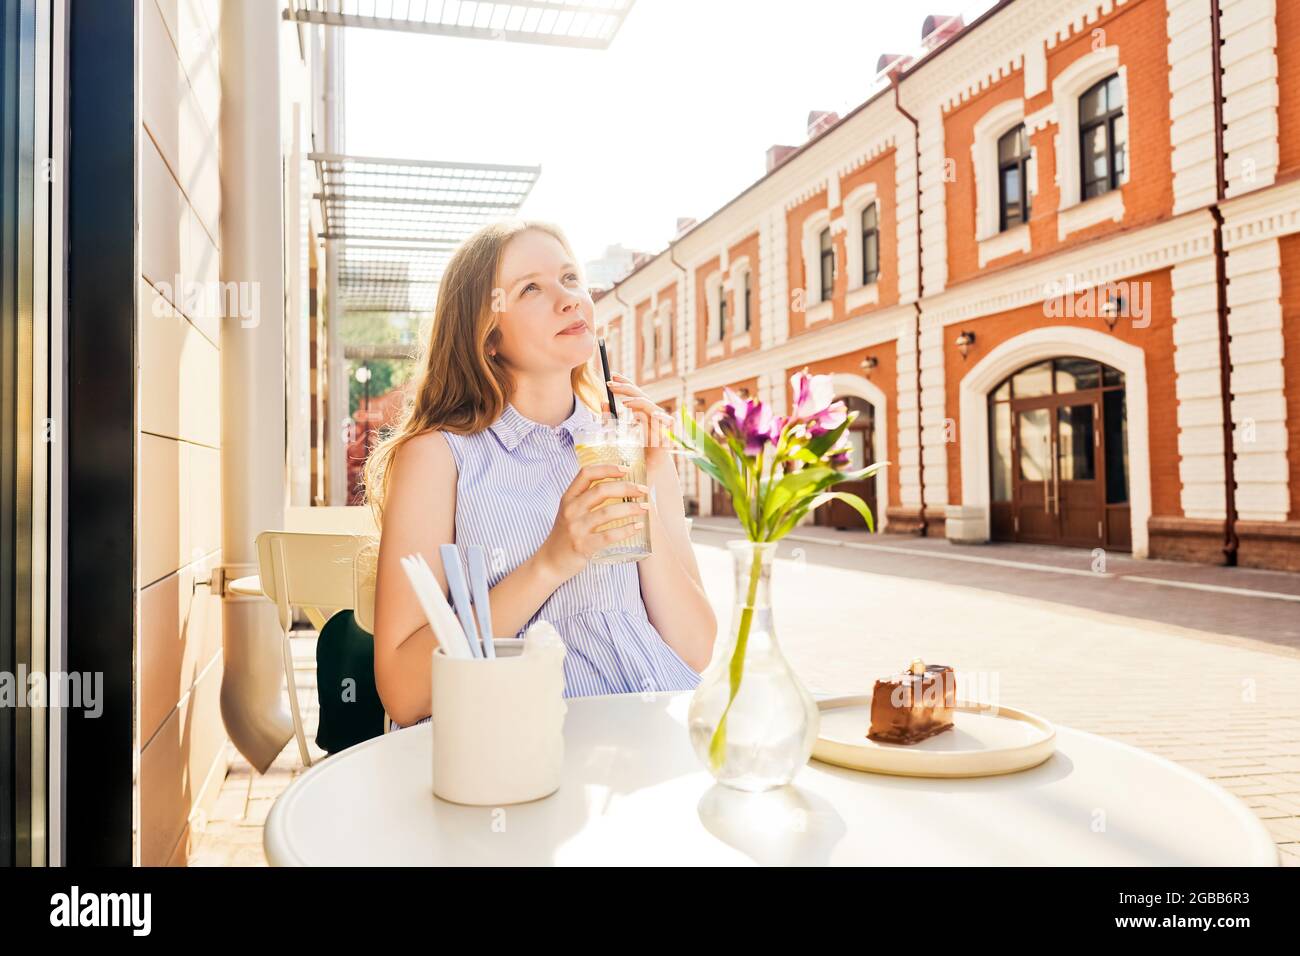 Une jeune femme boit de la limonade dans un café d'été. Rue en arrière-plan. Banque D'Images